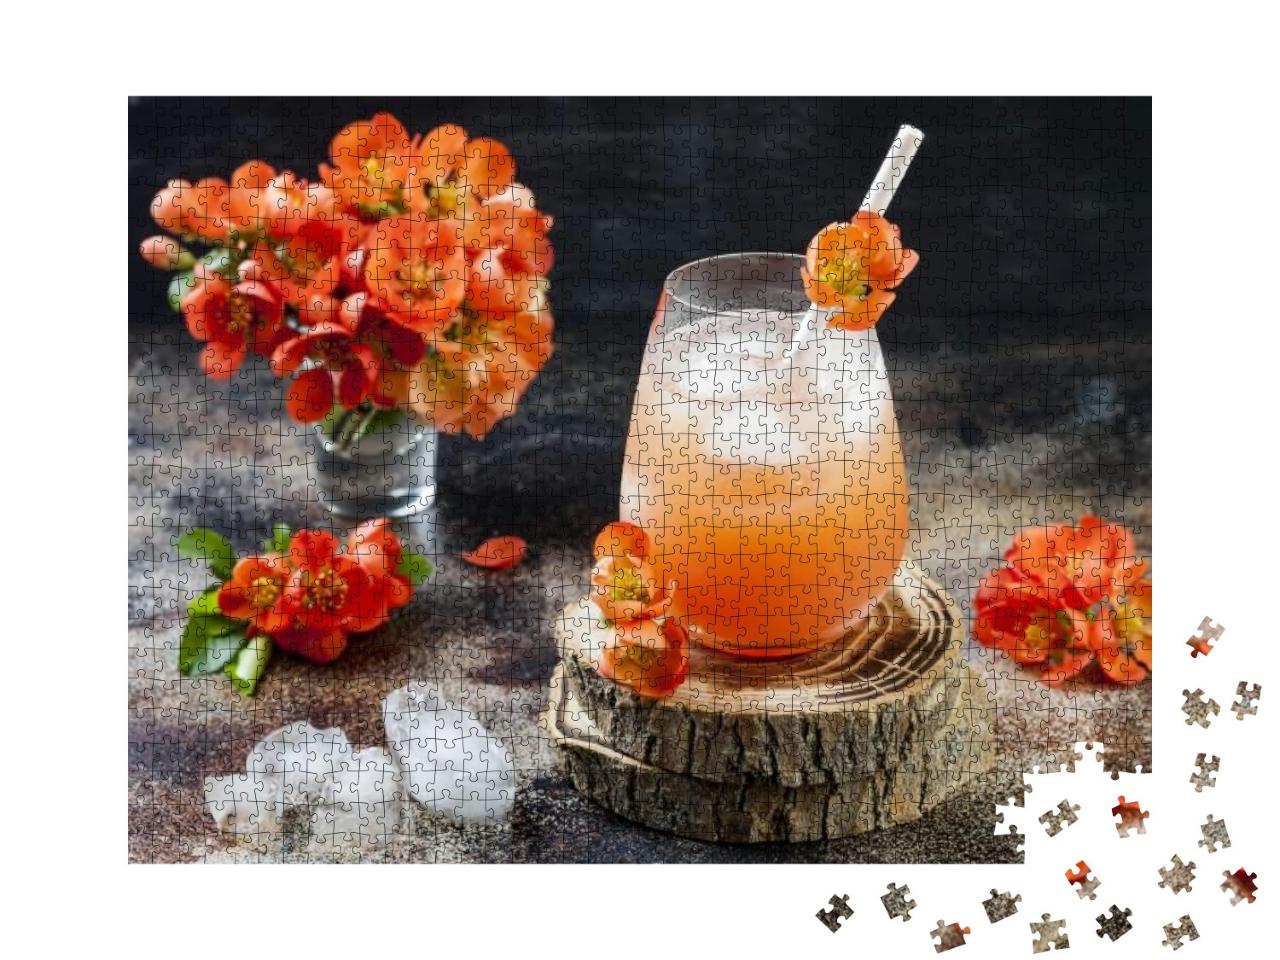 Puzzle 1000 Teile „Pfirsich-Cocktail, garniert mit Quittenblüten“